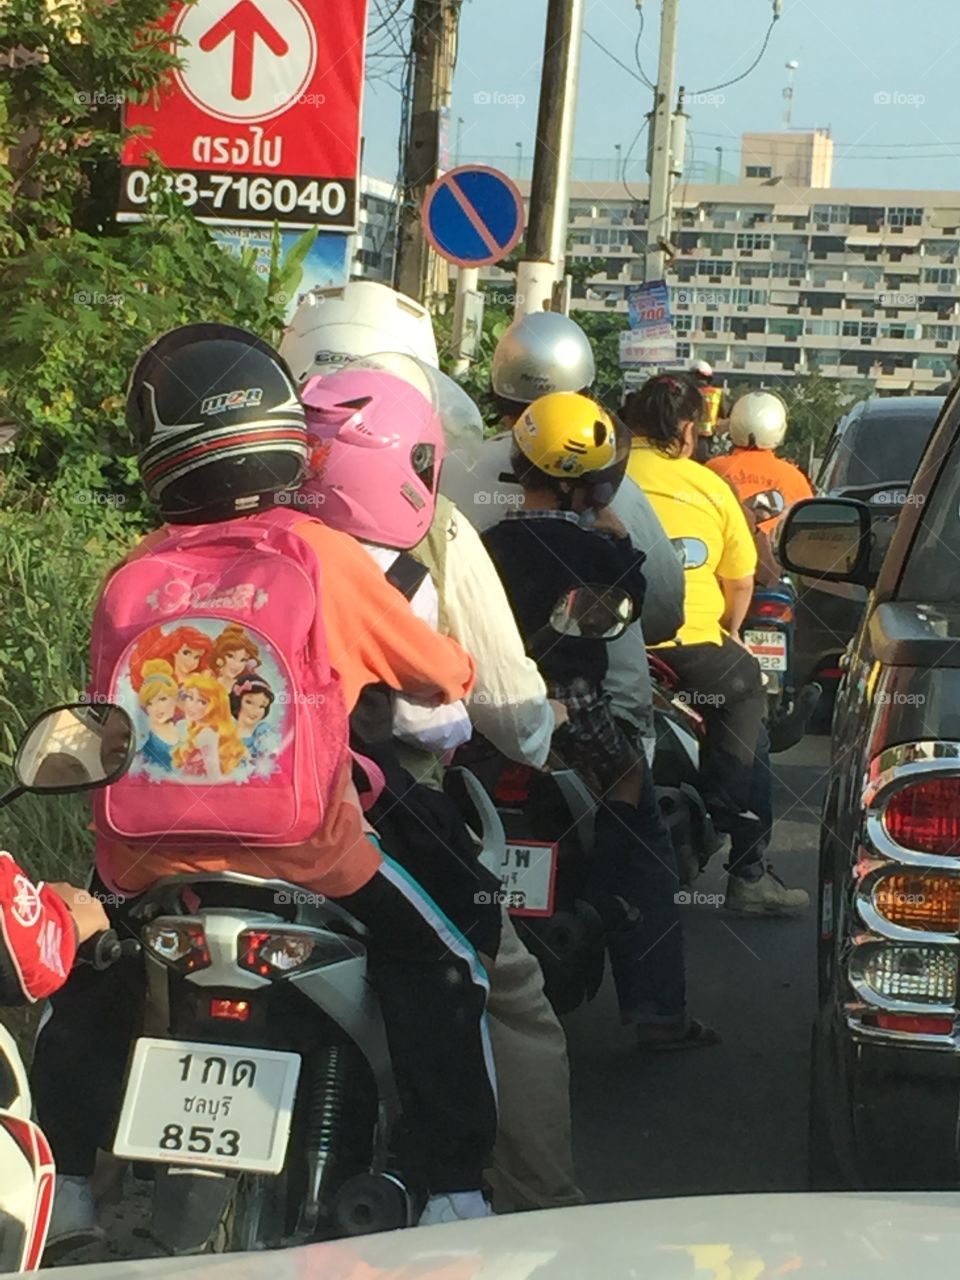 Morning traffic. Motor scooter traffic in Pattaya, Thailand